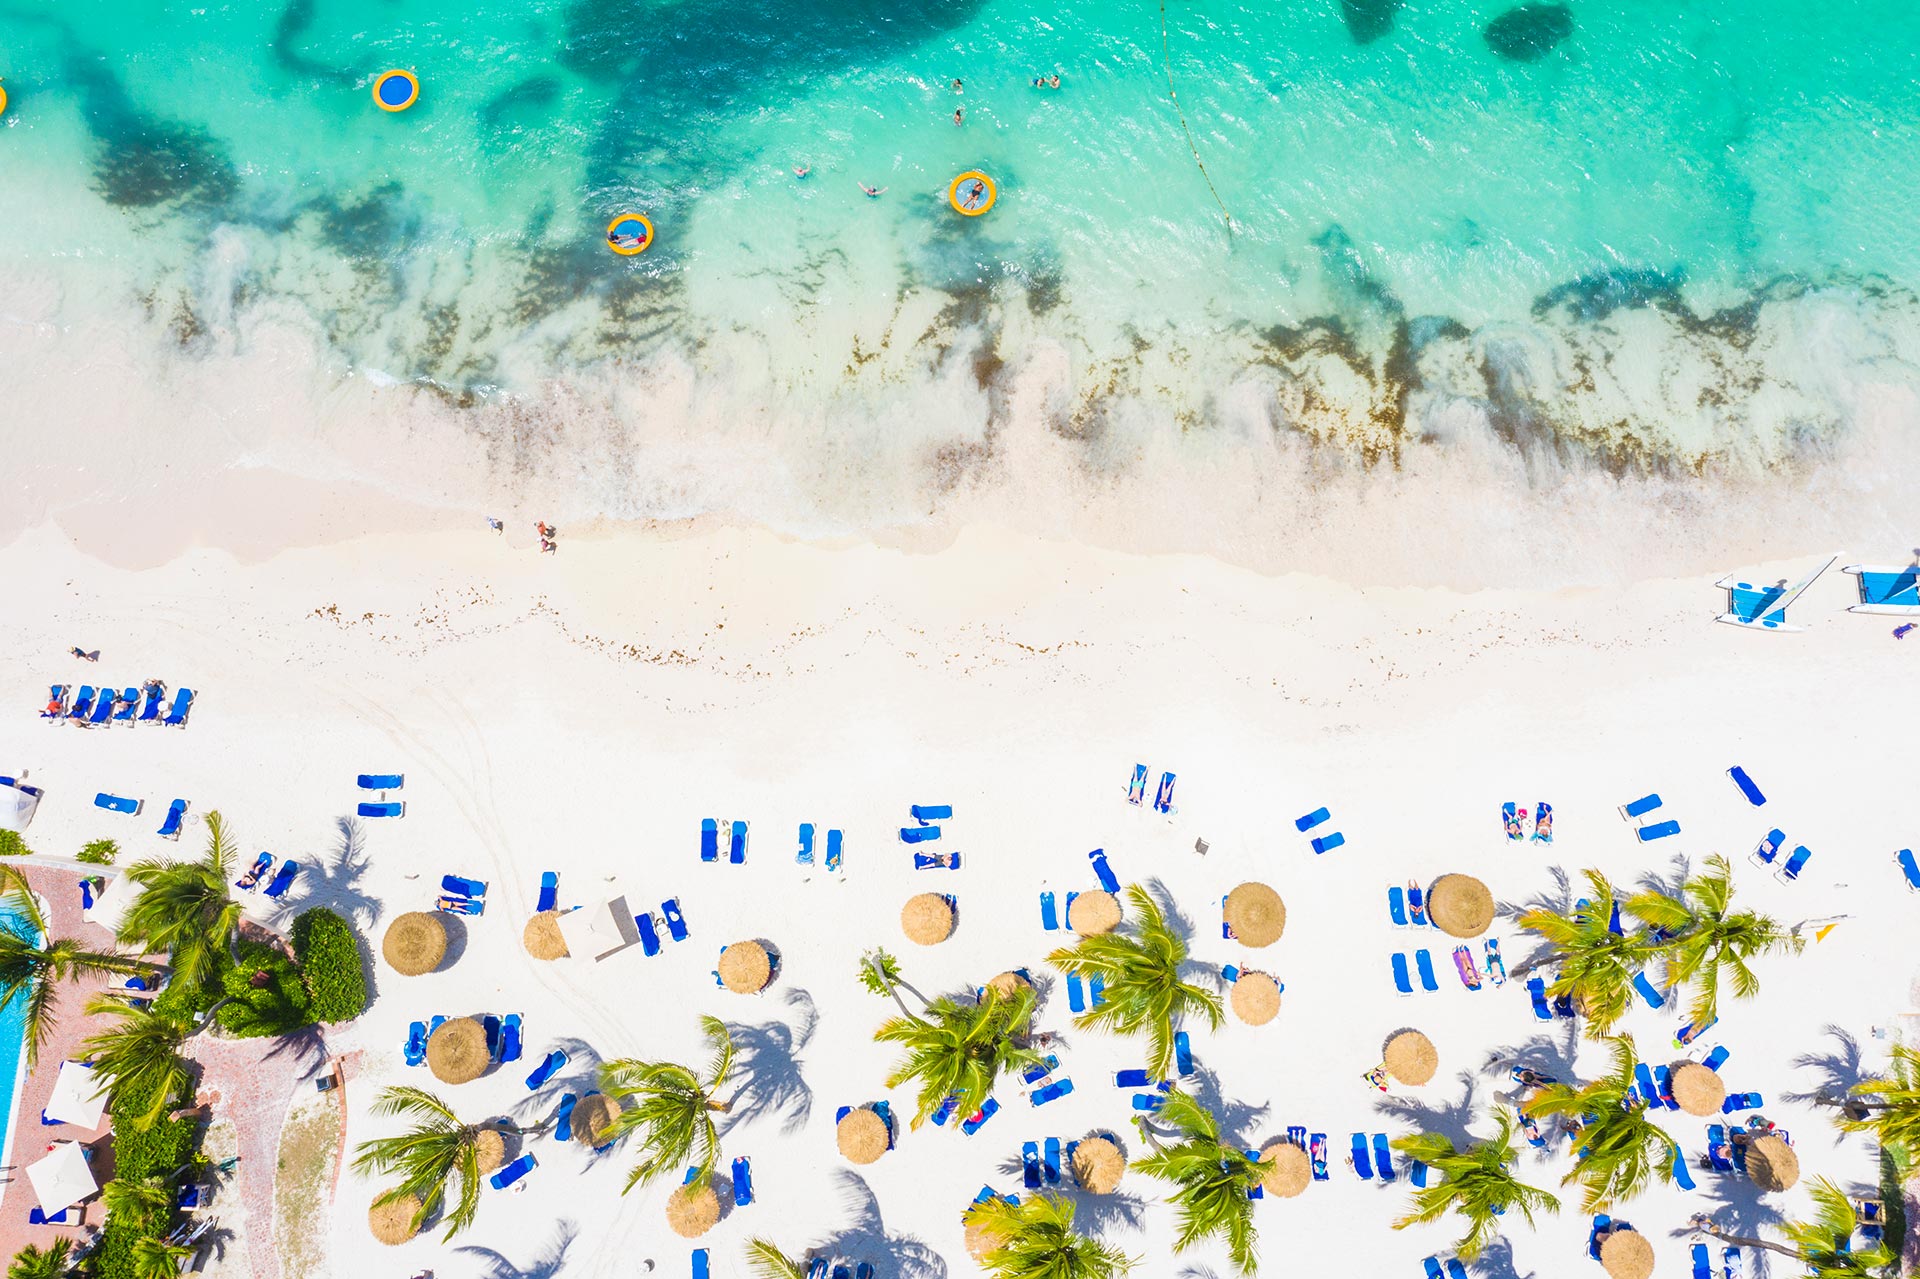 Antigua tiene 365 playas. Dos de las mejores playas adyacentes entre sí, Ffryes Beach y Little Ffryes Beach